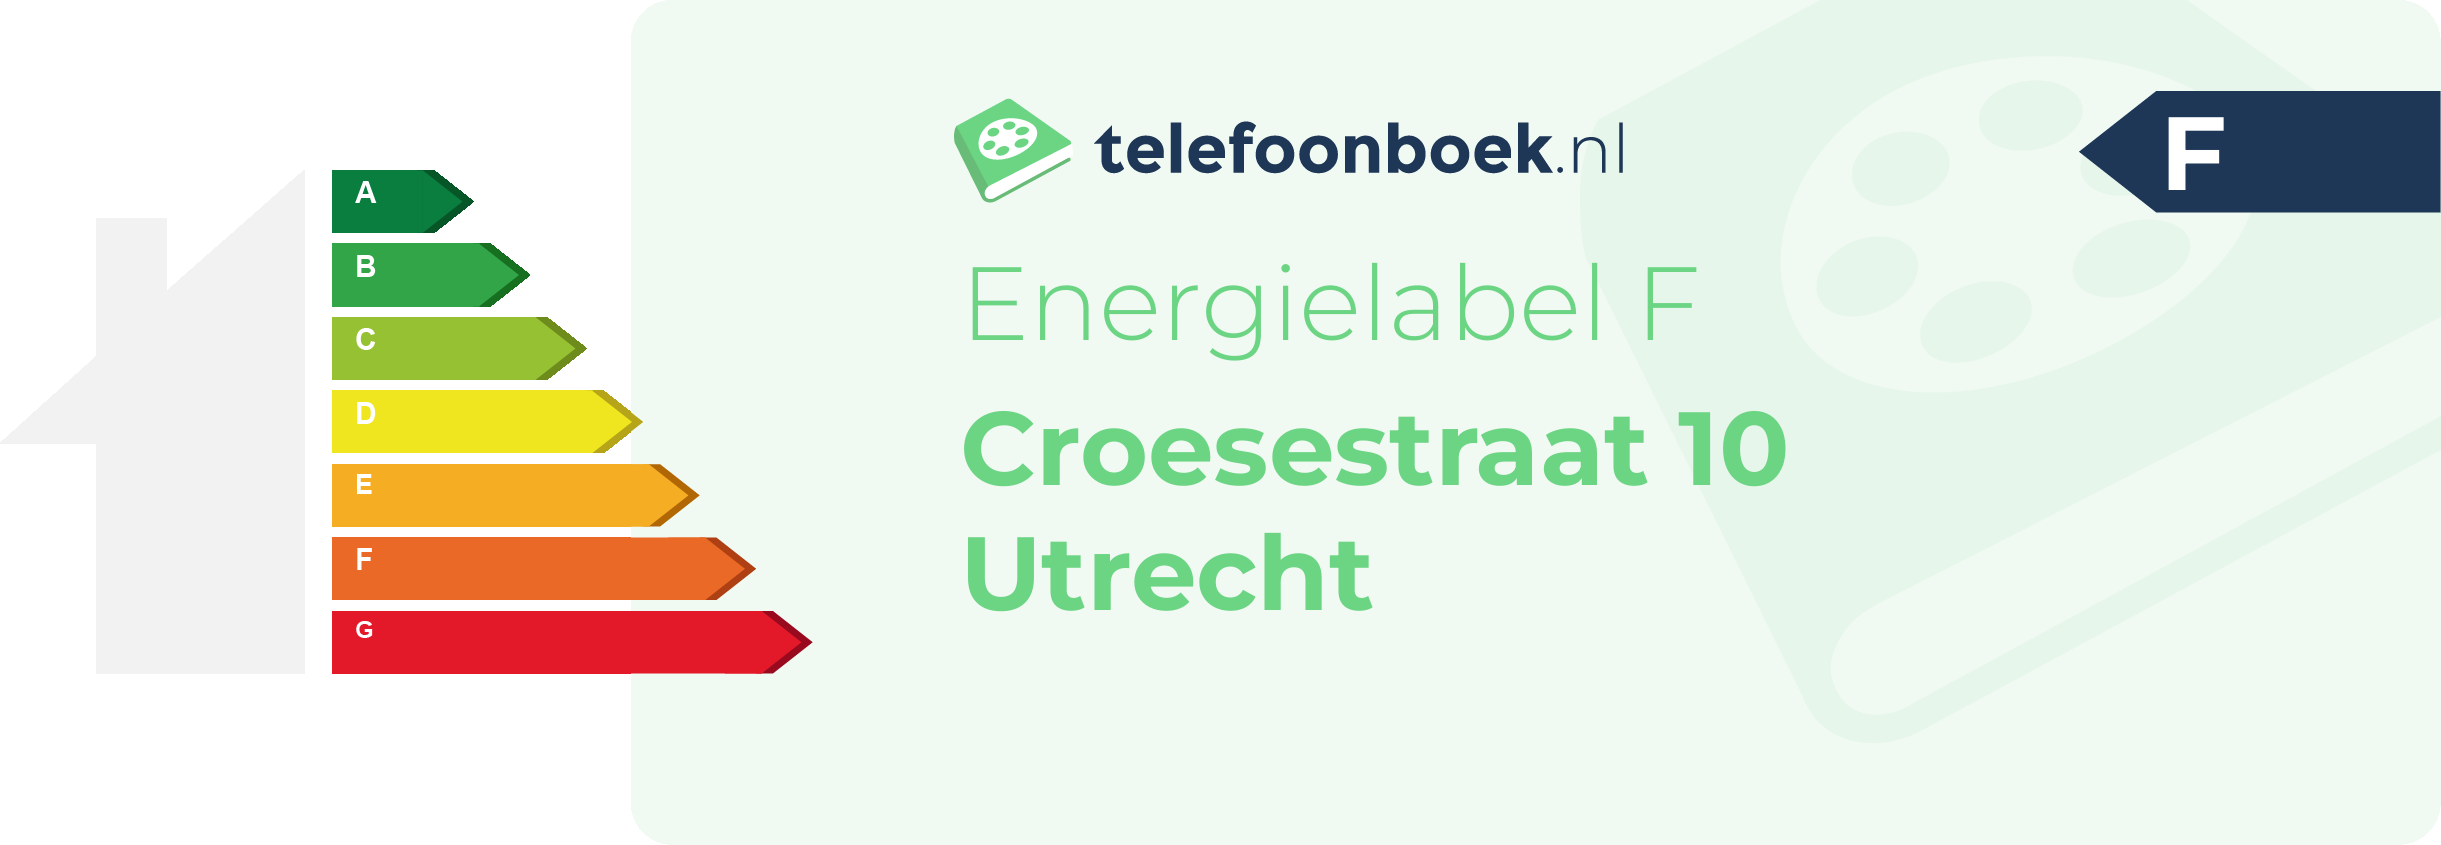 Energielabel Croesestraat 10 Utrecht